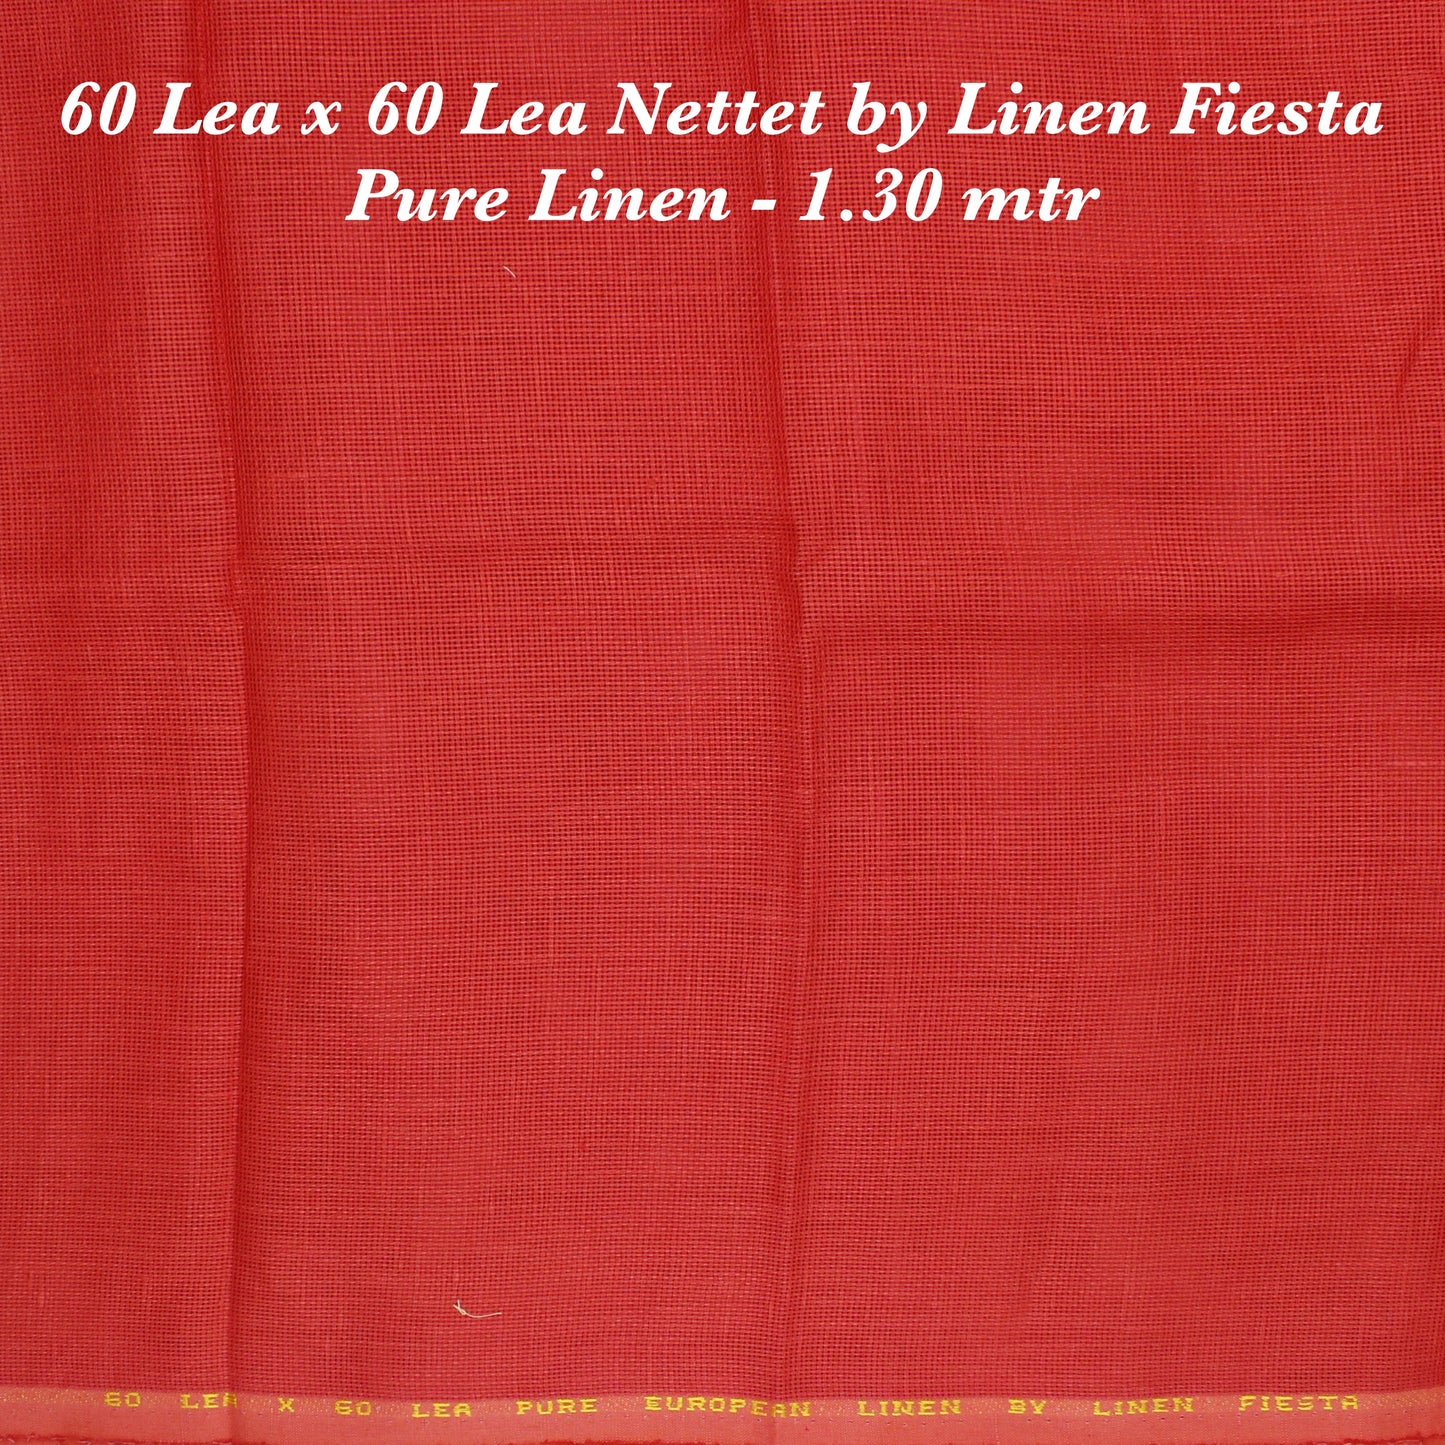 1.30 mtr Shirting Fabric - END BIT (30%)